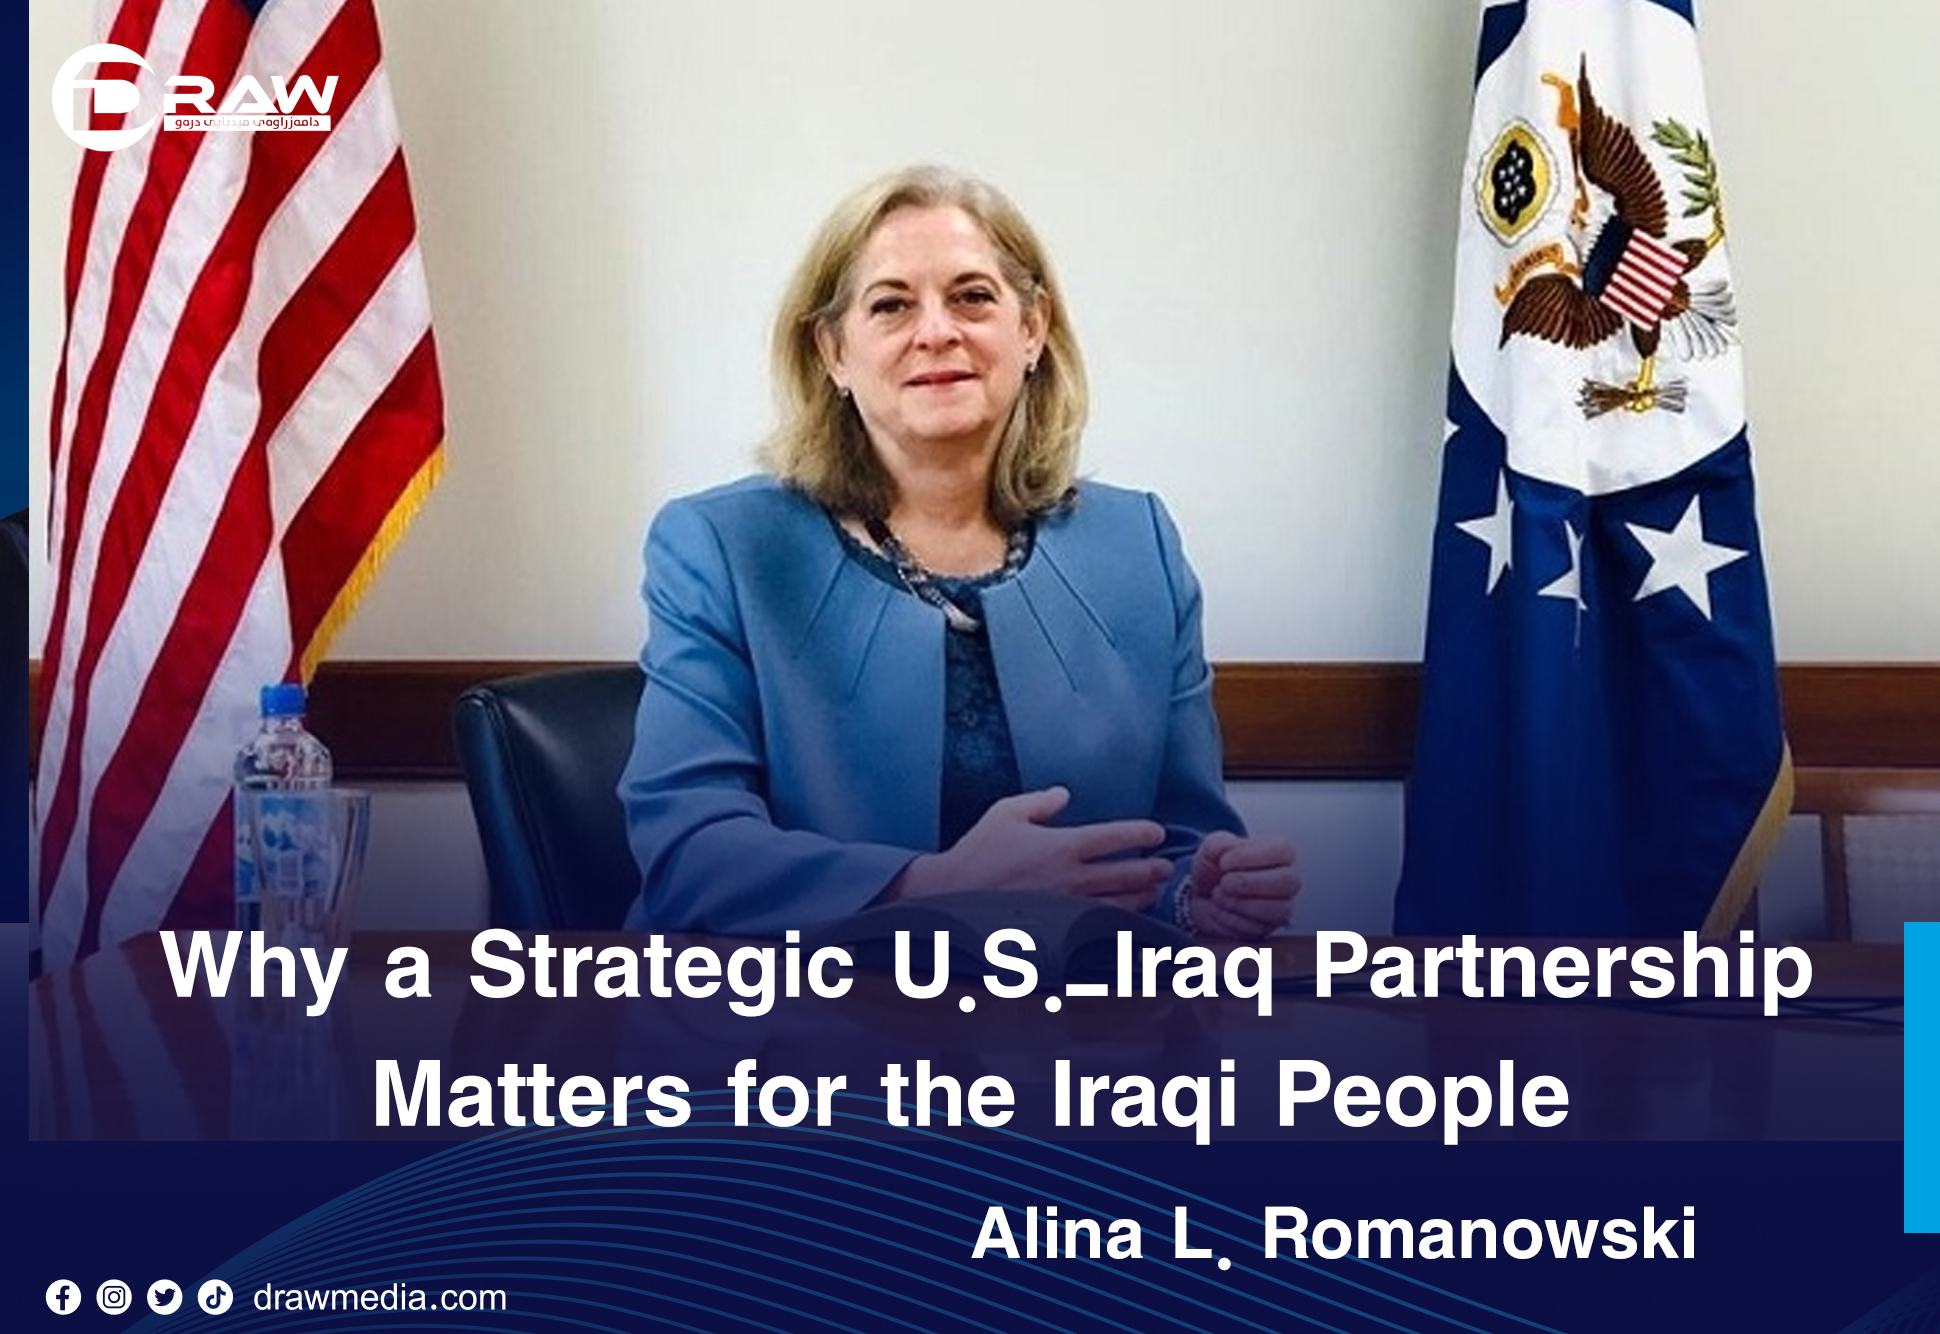 DrawMedia.net / Why a Strategic U.S.-Iraq Partnership Matters for the Iraqi People